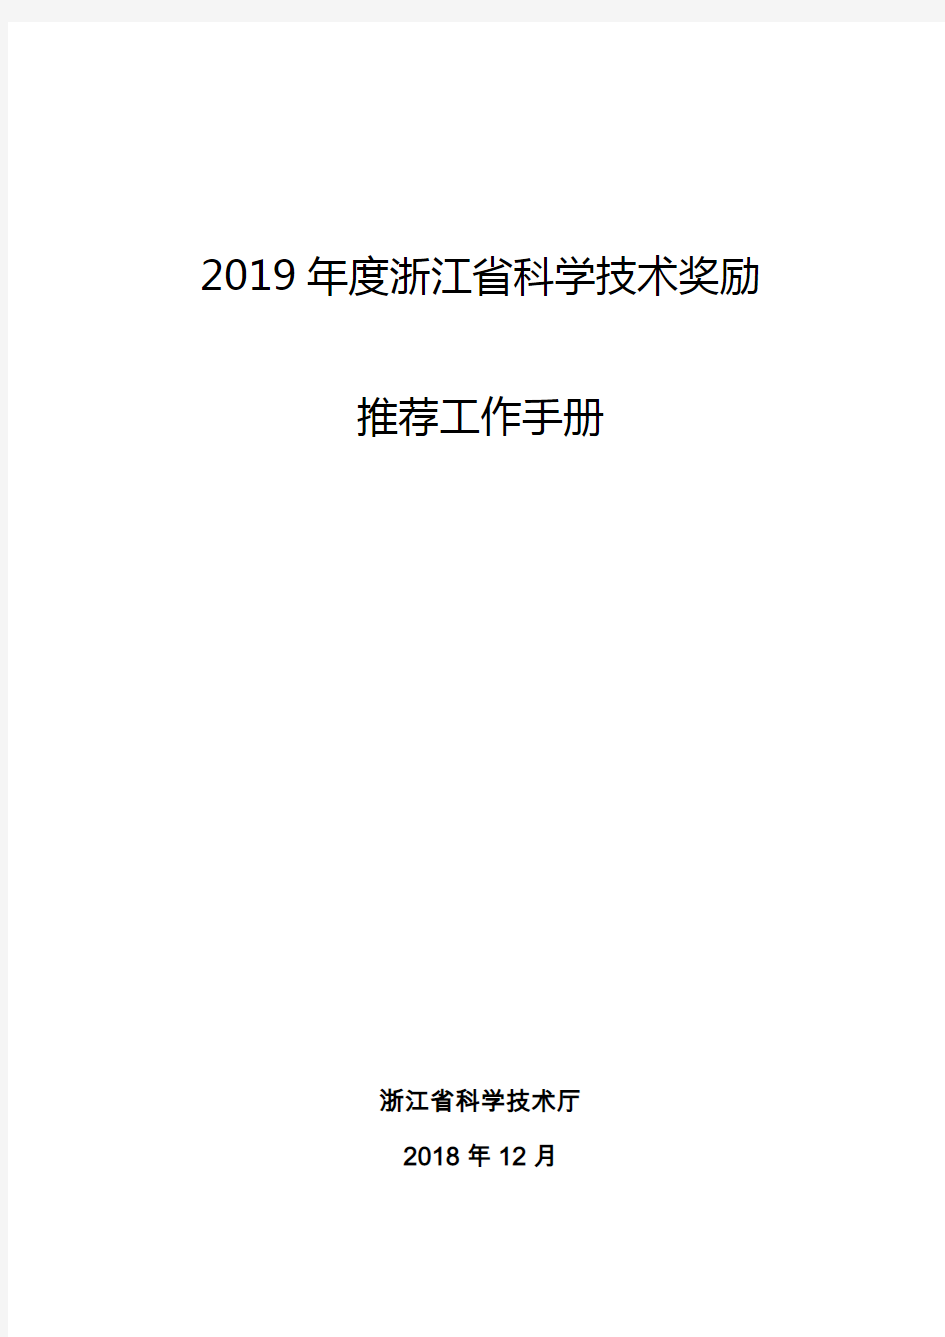 2019年度浙江省科学技术奖励